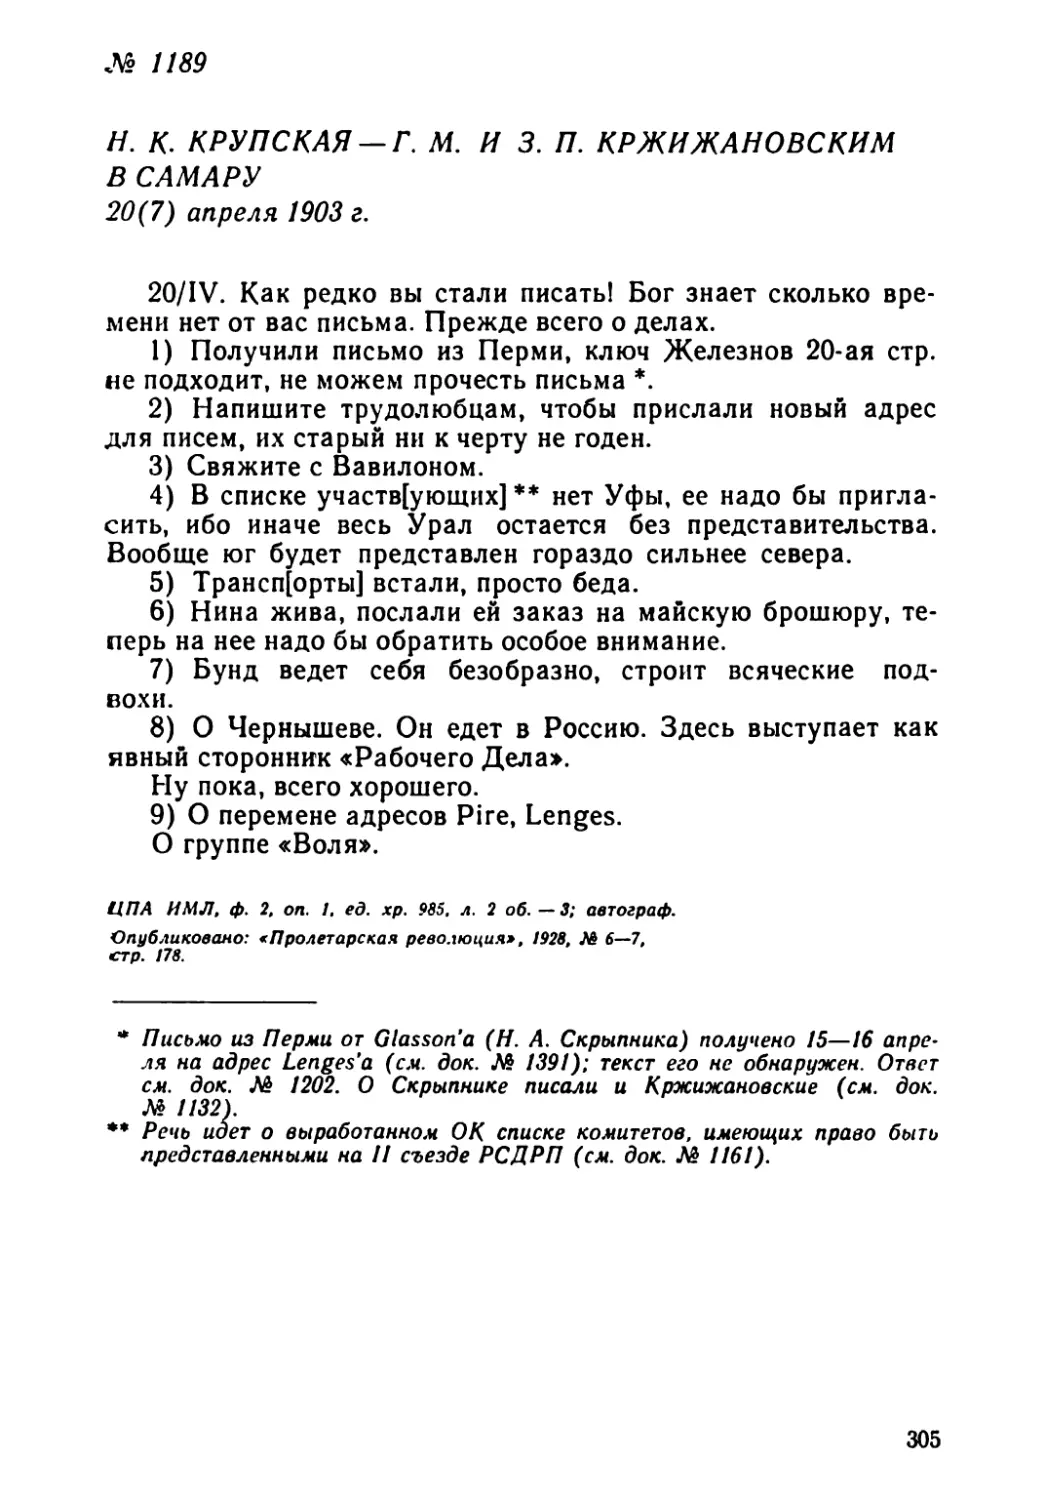 № 1189 H. К. Крупская — Г. М. и 3. П. Кржижановским в Самару. 20 апреля